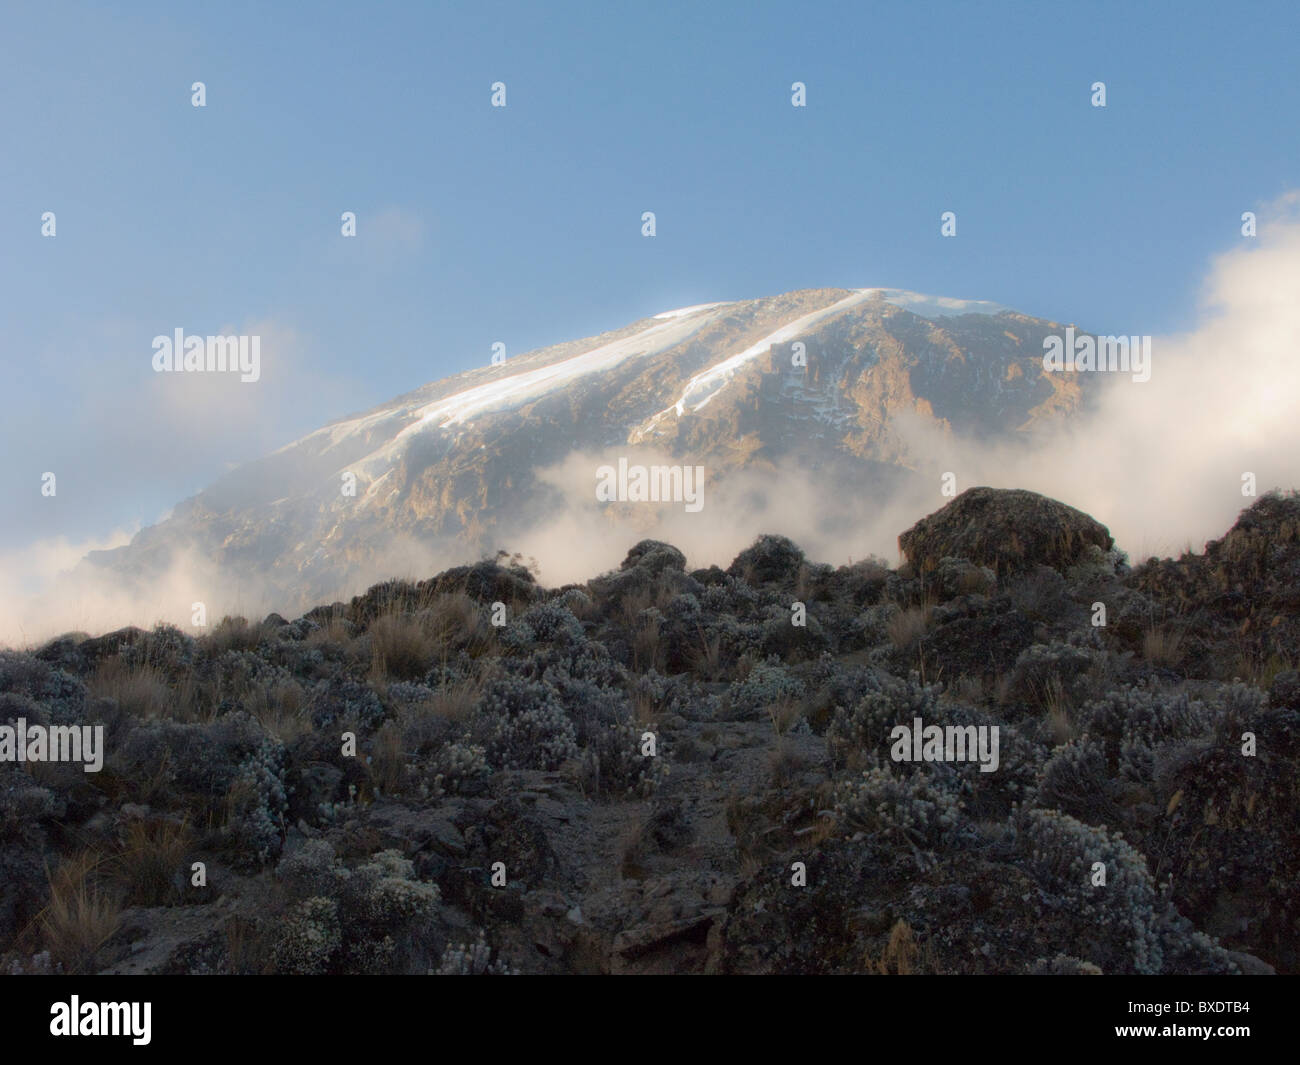 La cumbre del Kilimanjaro mira desde abajo aumento de bruma y nubes en los valles de abajo. Foto de stock